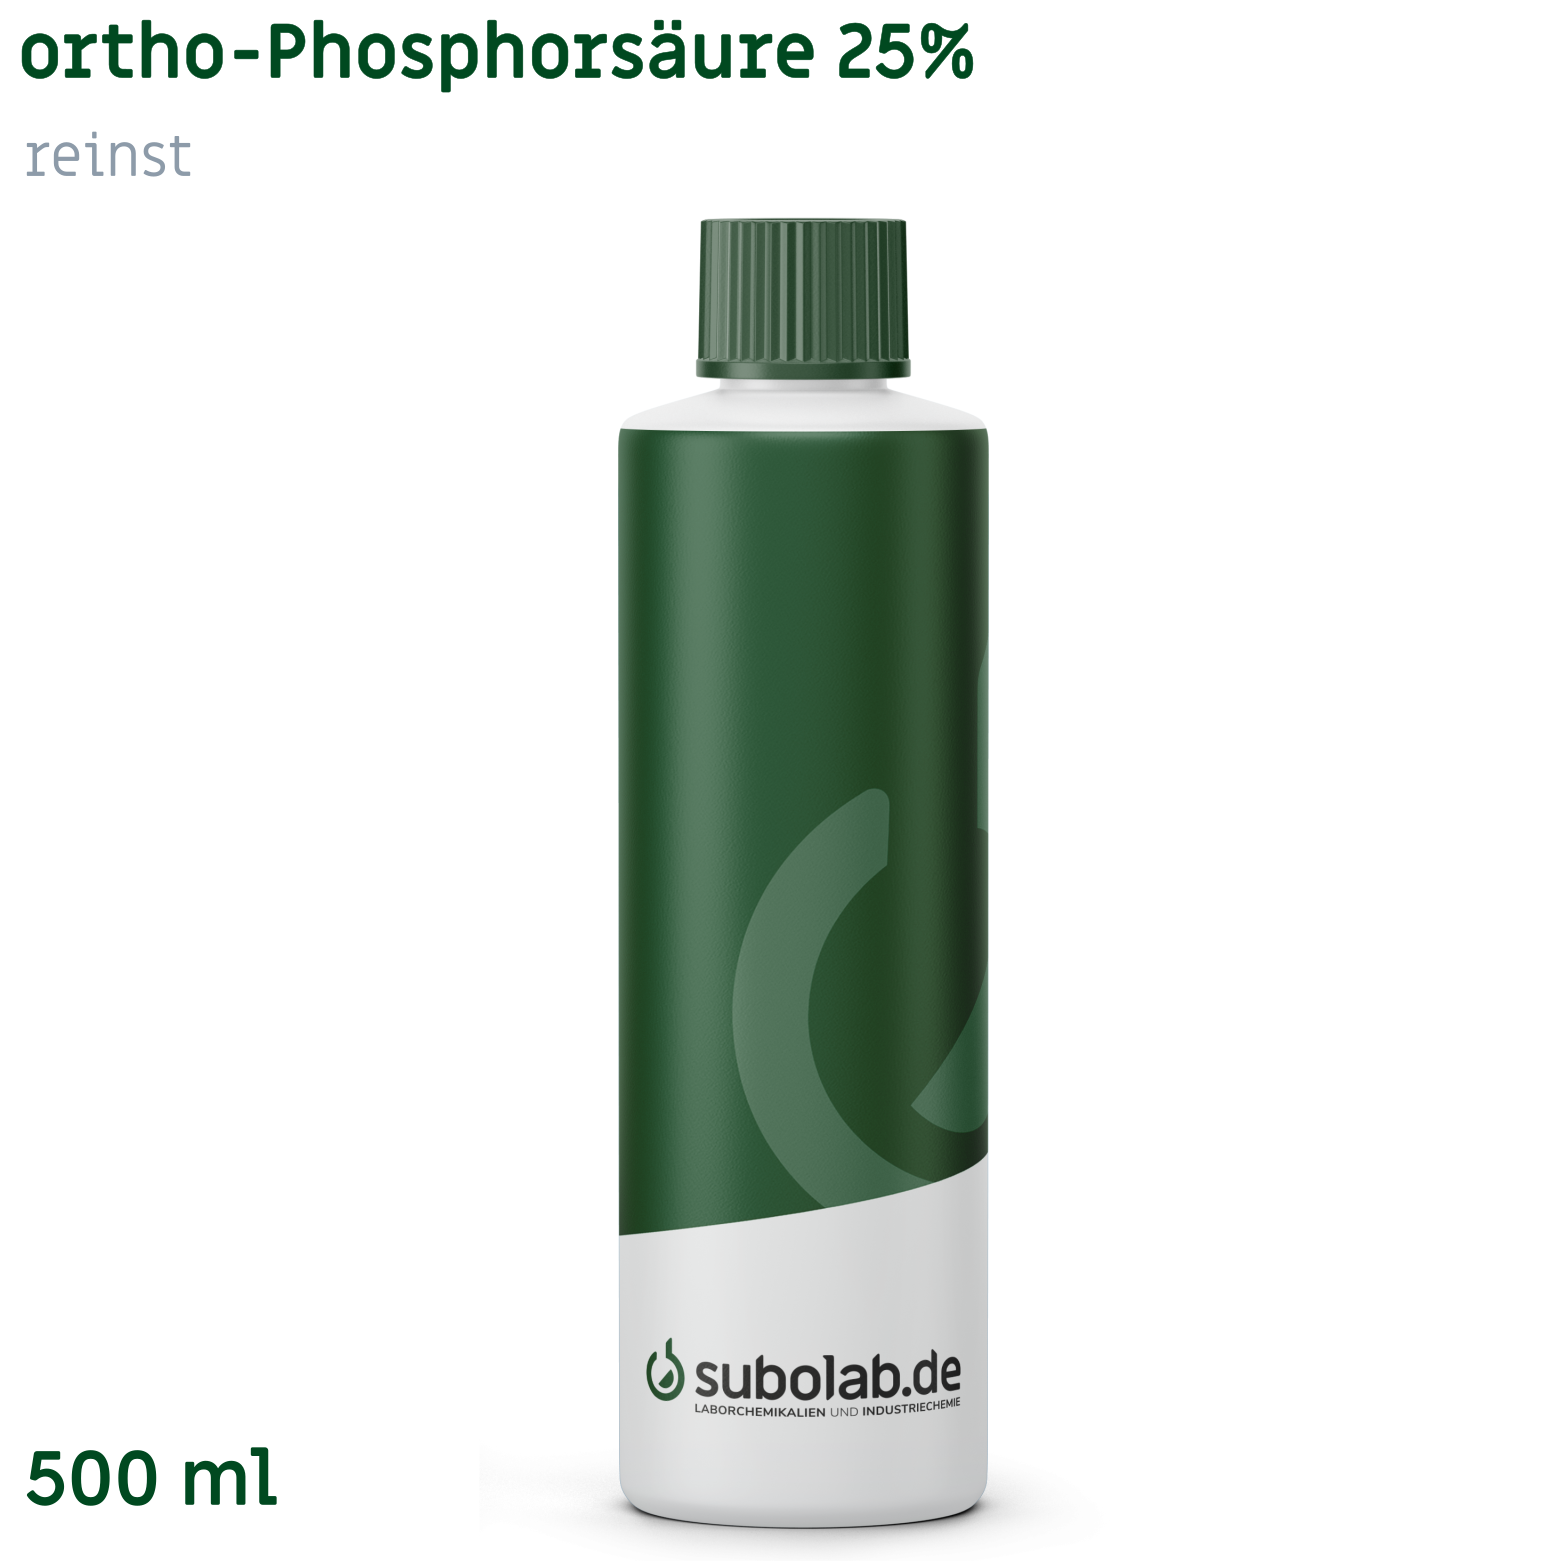 Bild von ortho-Phosphorsäure 25% reinst (500 ml)